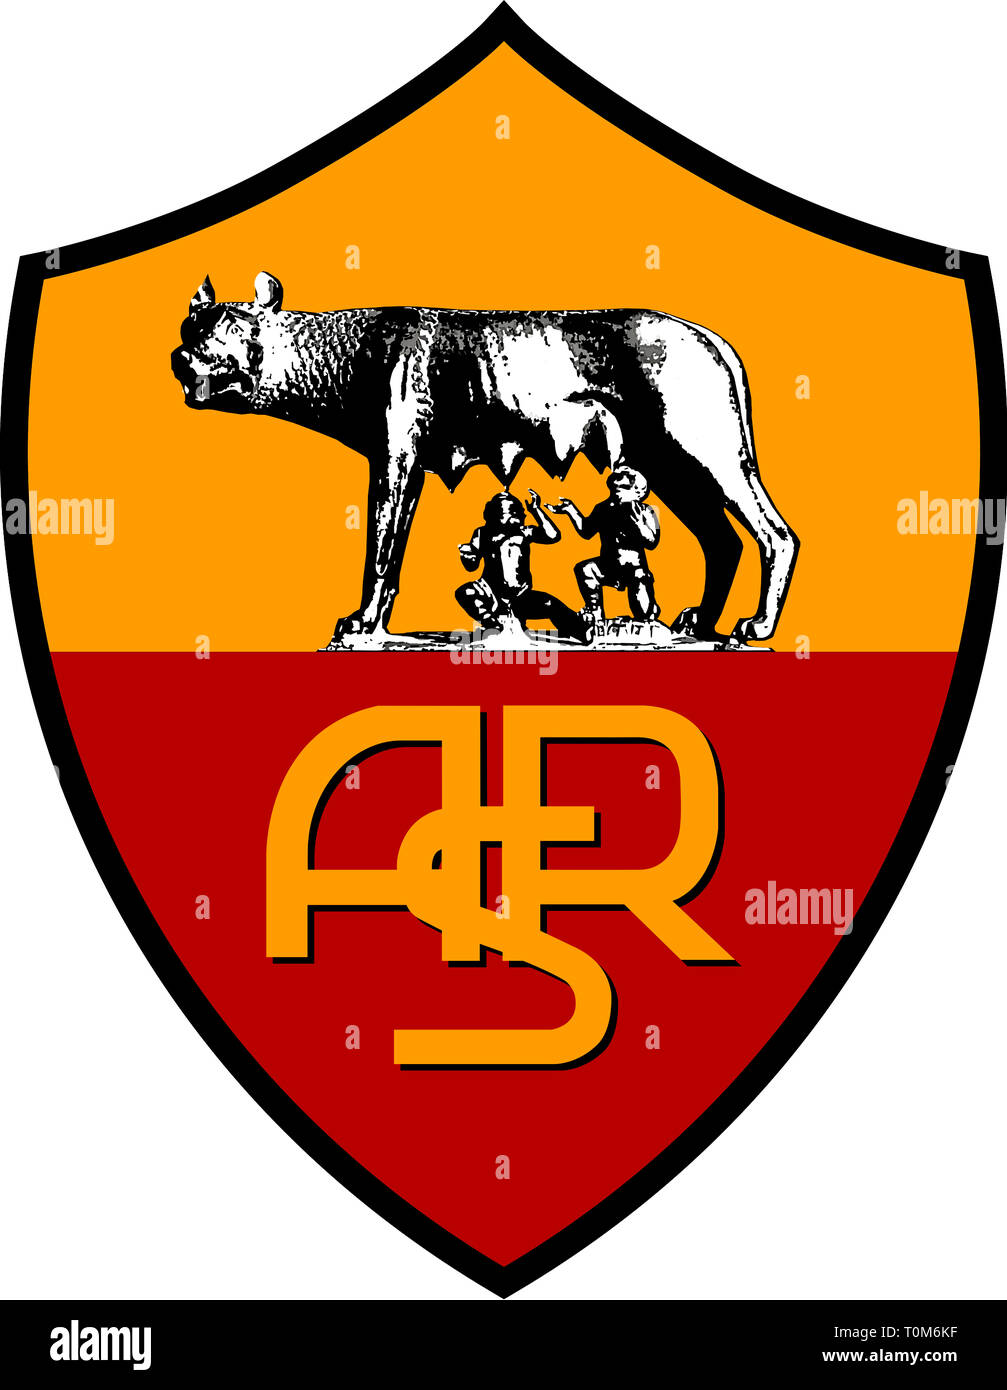 Logo of Italian football team AS Roma - Italy Stock Photo - Alamy